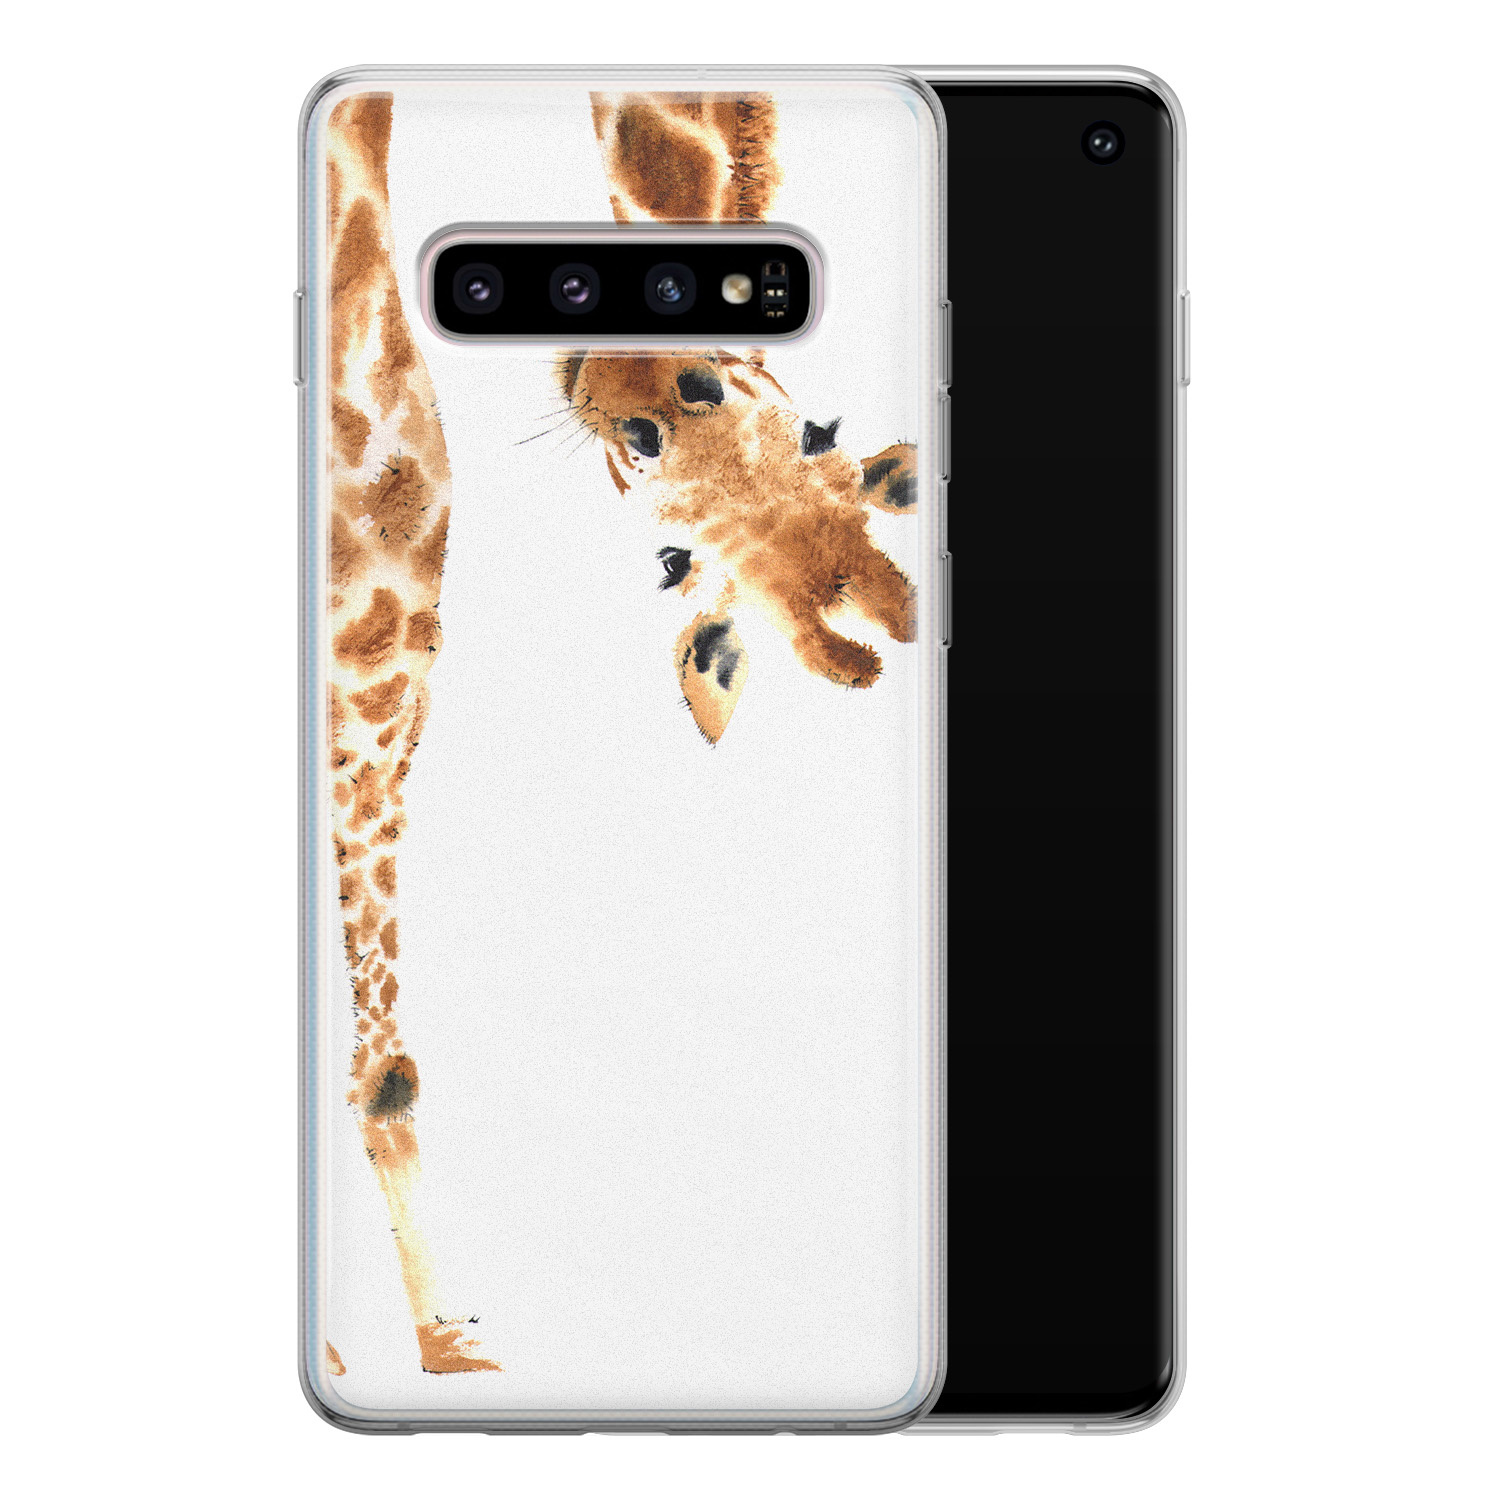 Leuke Telefoonhoesjes Samsung Galaxy S10 siliconen hoesje - Giraffe peekaboo